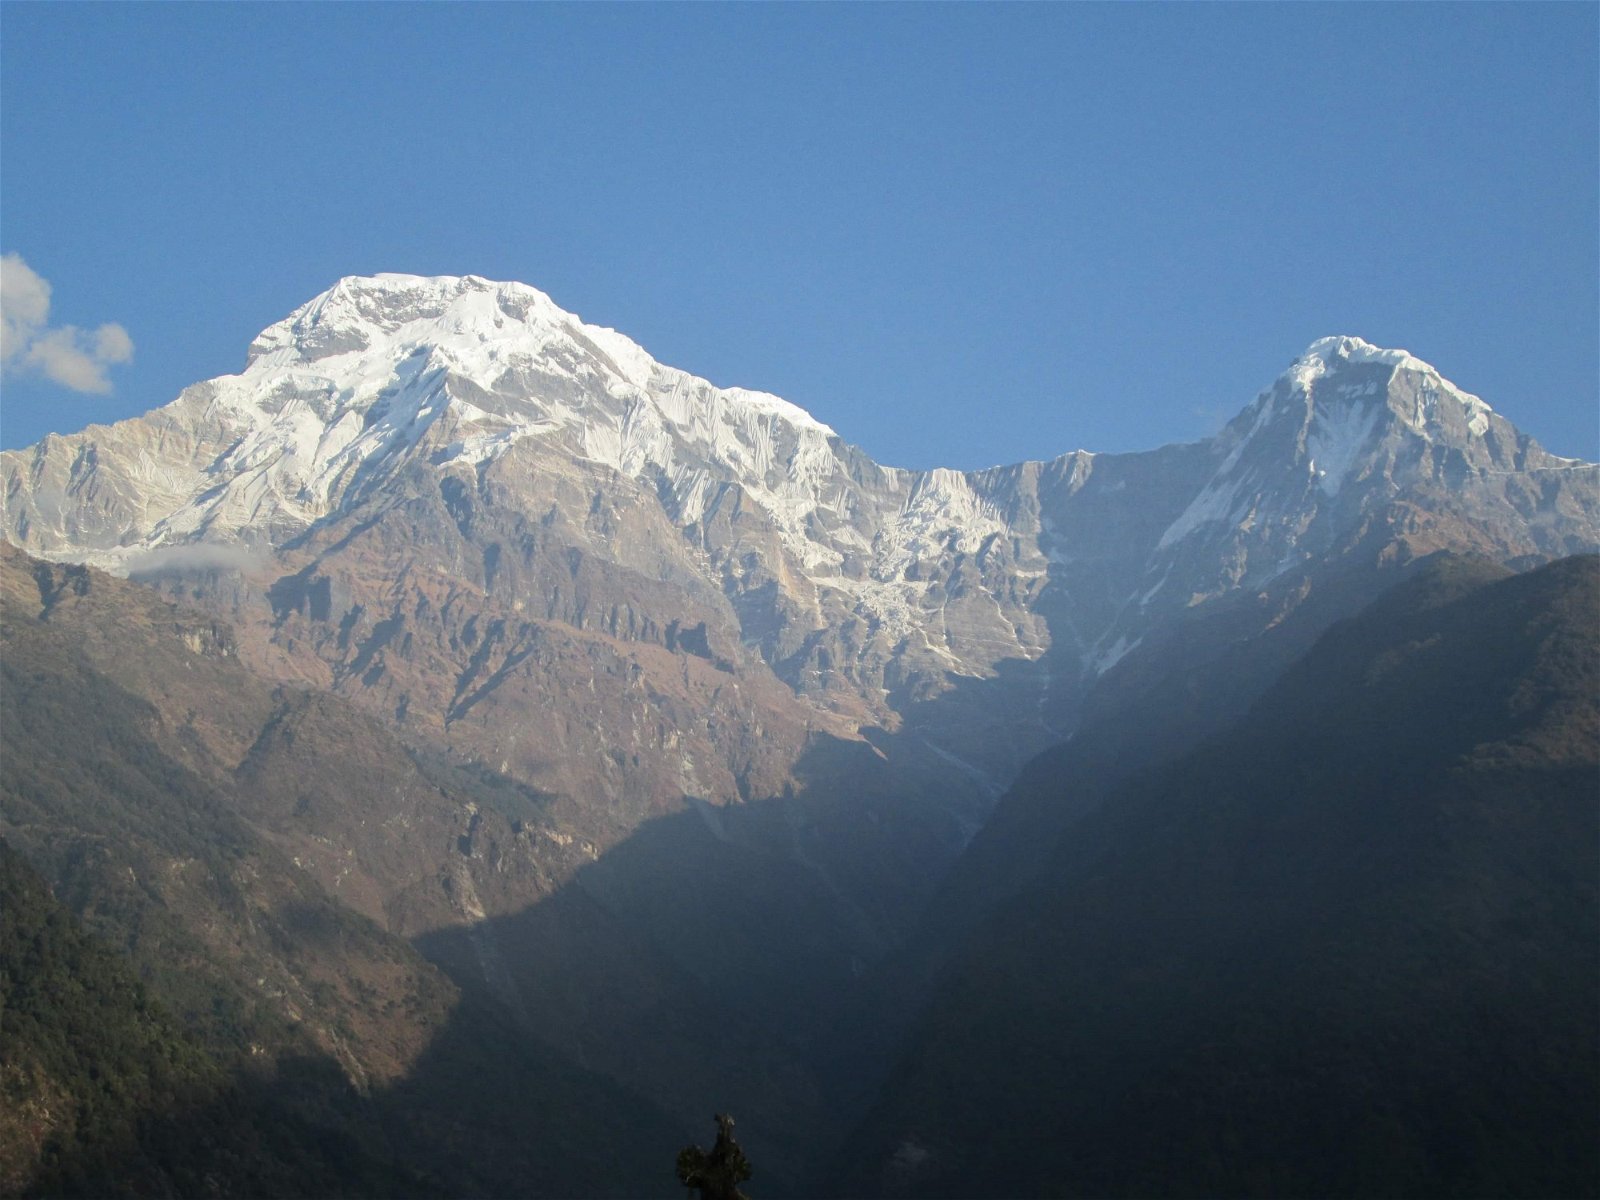 安纳普尔纳峰是喜马拉雅山脉的著名十座高峰之一，山脉虽然近在眼前，但要登上高峰却需要一番能耐。